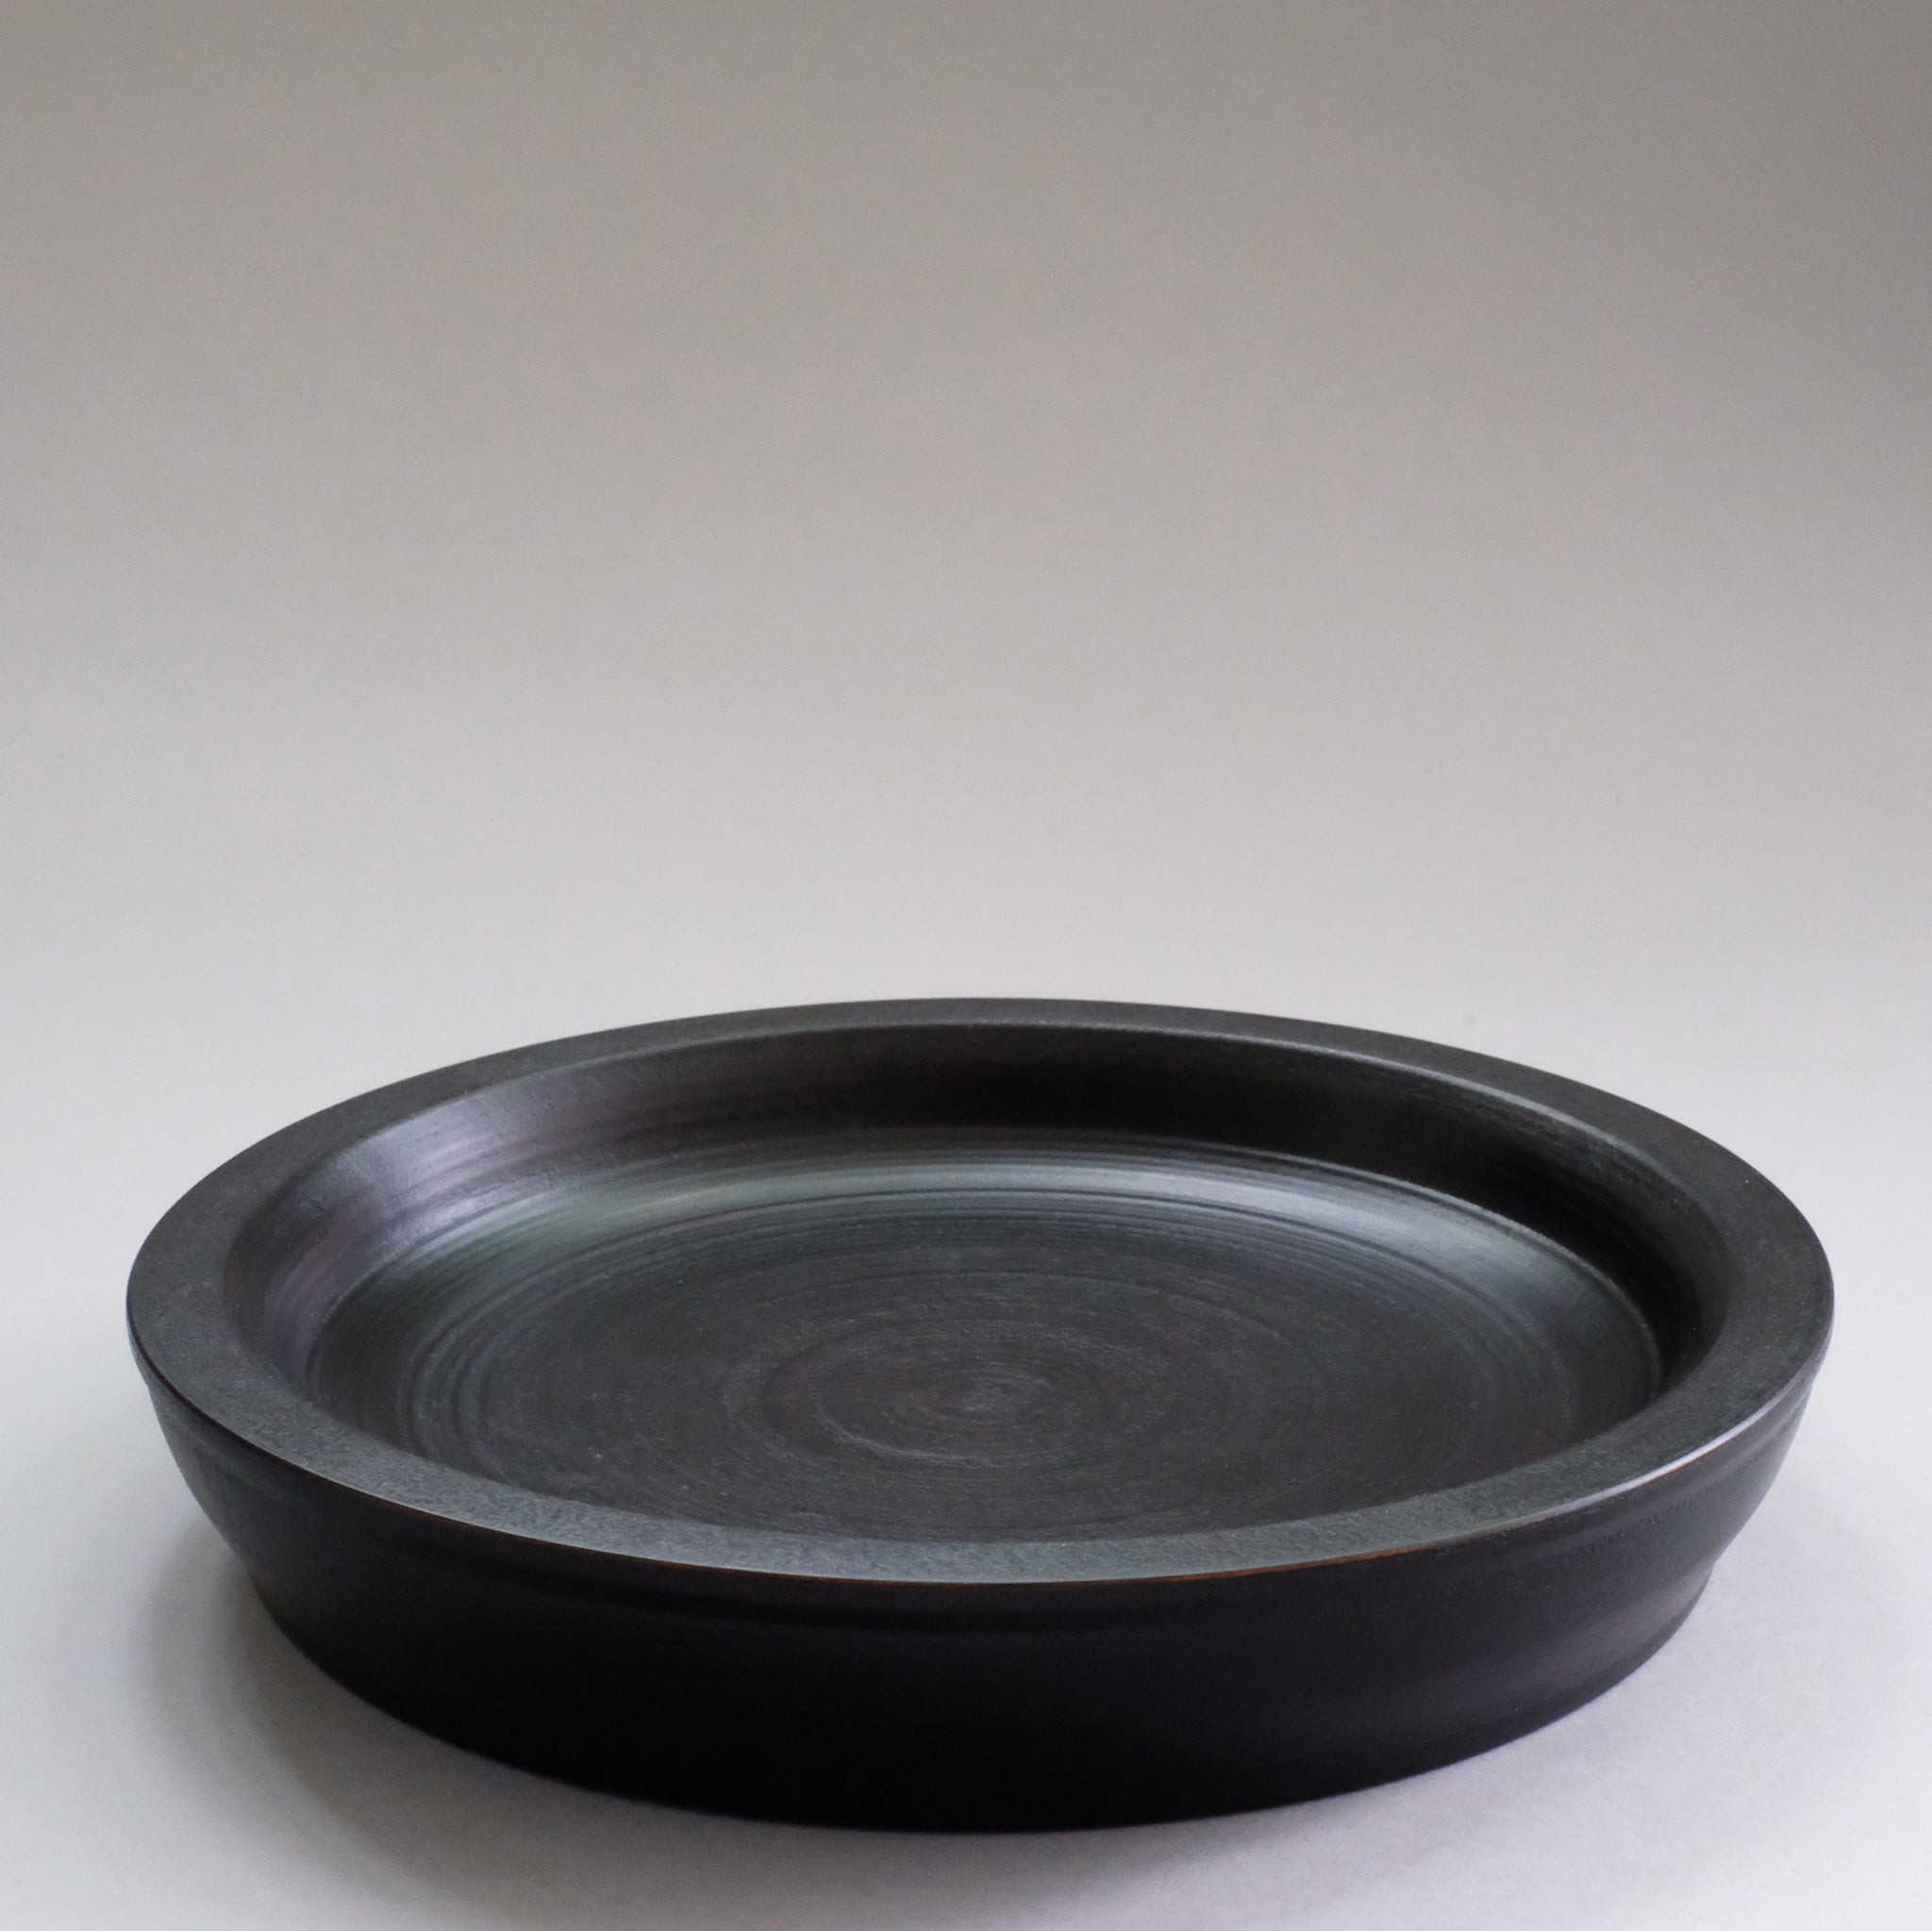 赤木明登  パン皿 大 (黒)  Akito Akagi Bread Plate L-size ( Black )